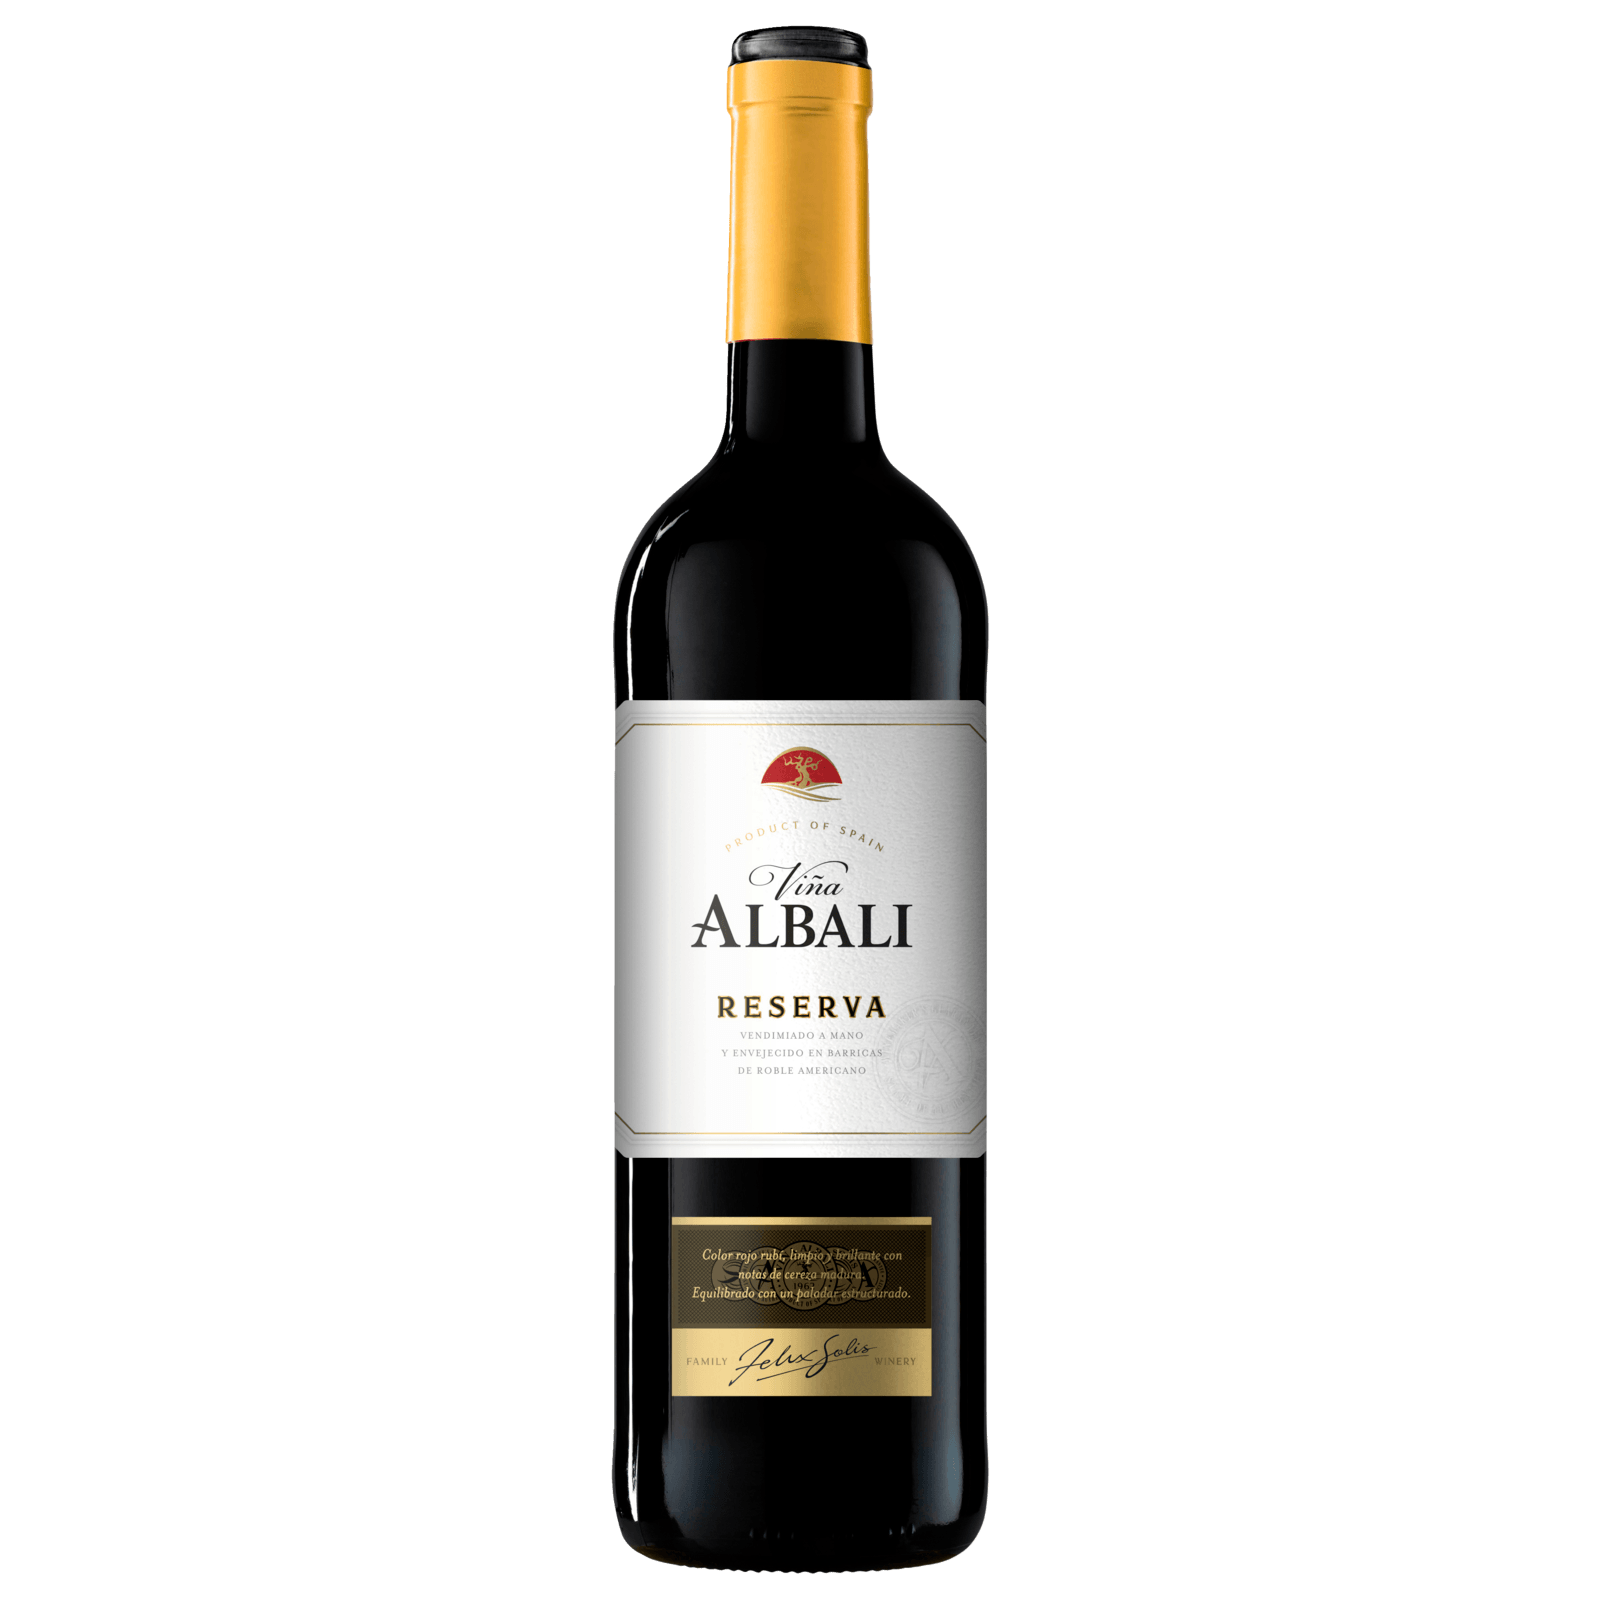 Rotwein Reserva 2017 Rioja Cepa Lidl Lebrel von 4,99€ trocken, DOCa für